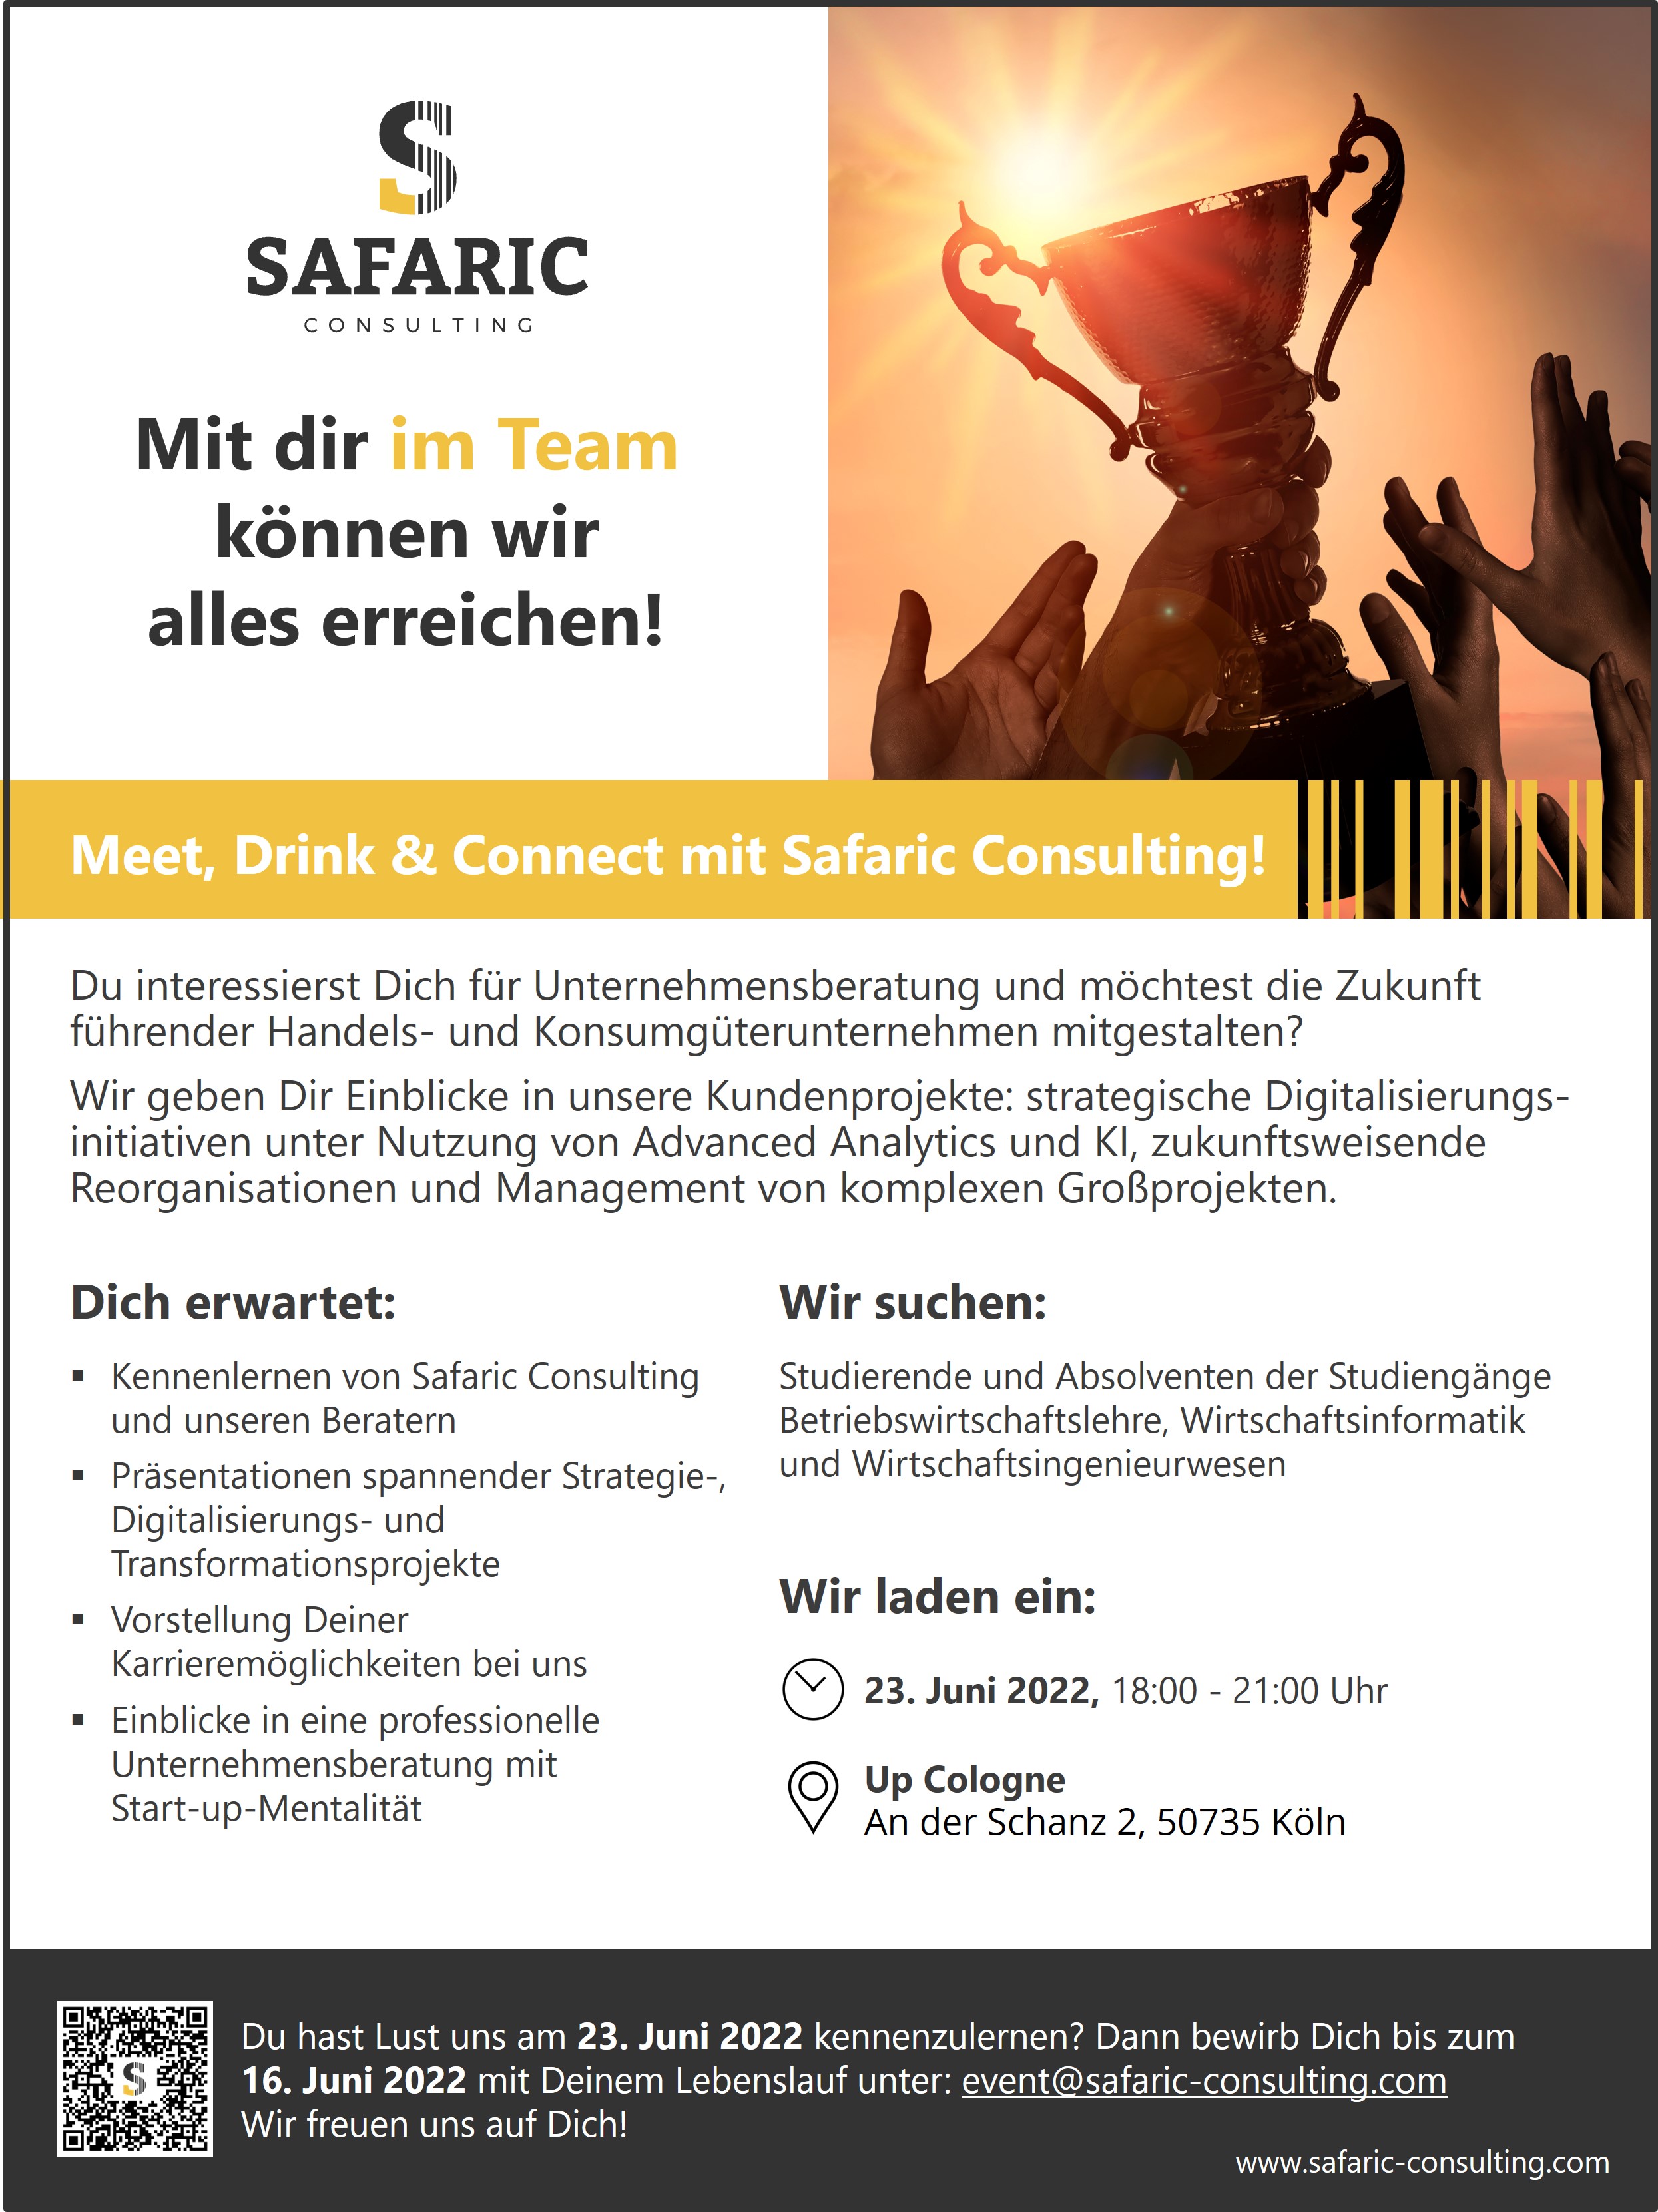 Meet, Drink & Connect Juni 2022 - Mit dir im Team können wir alles erreichen!